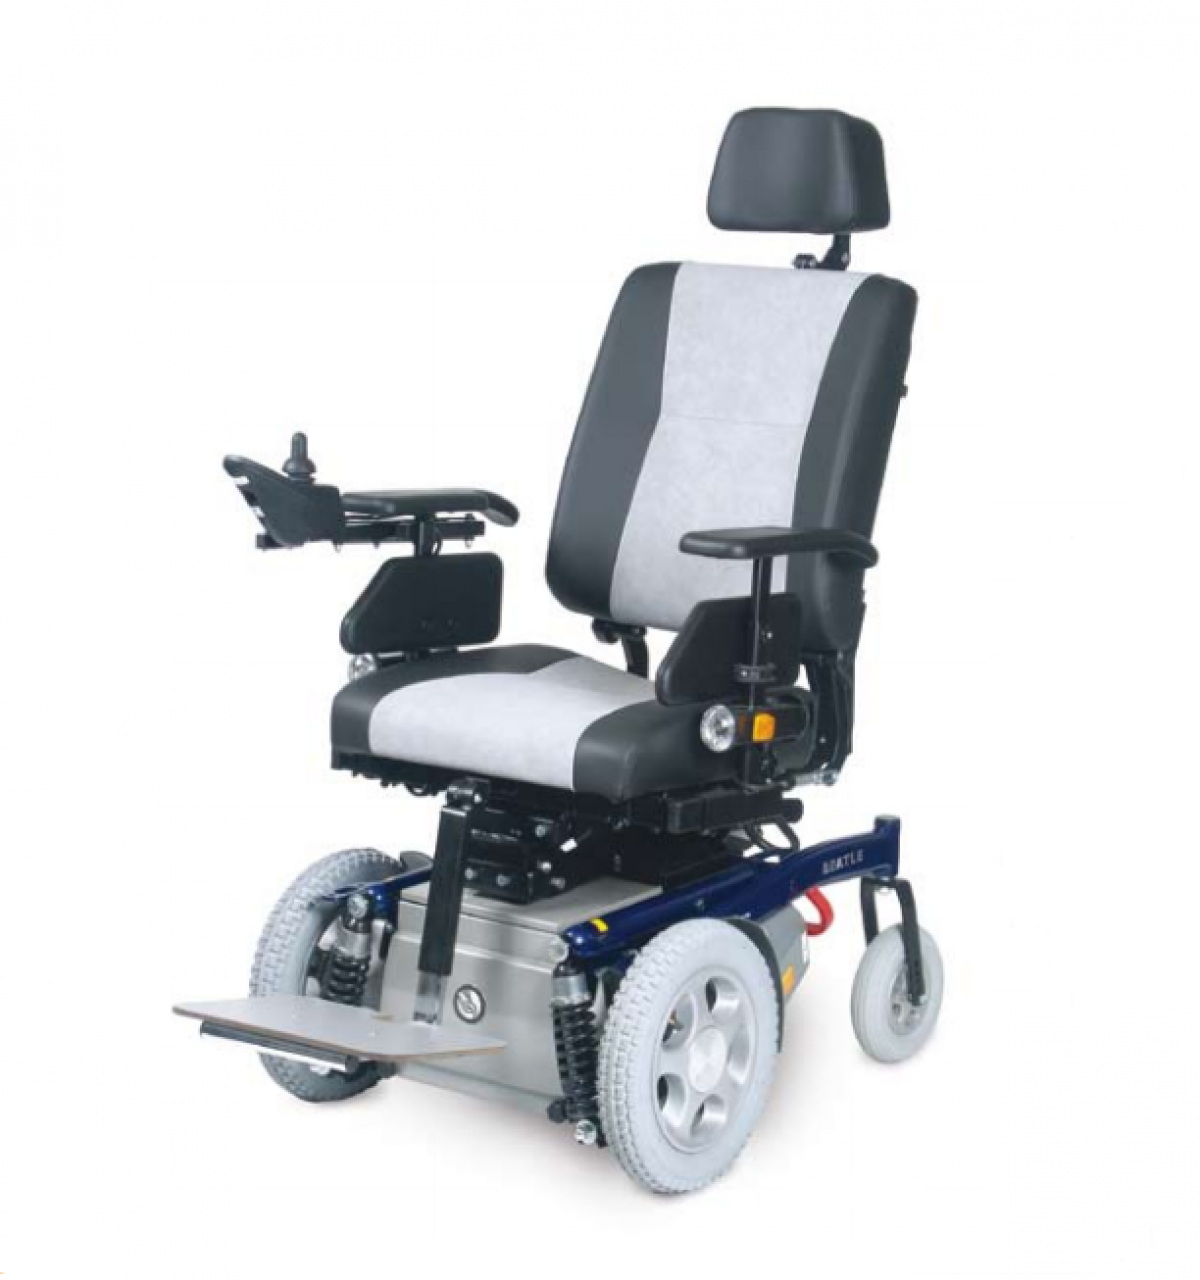 Elektrický invalidní vozík Handicare Beatle YeS foto